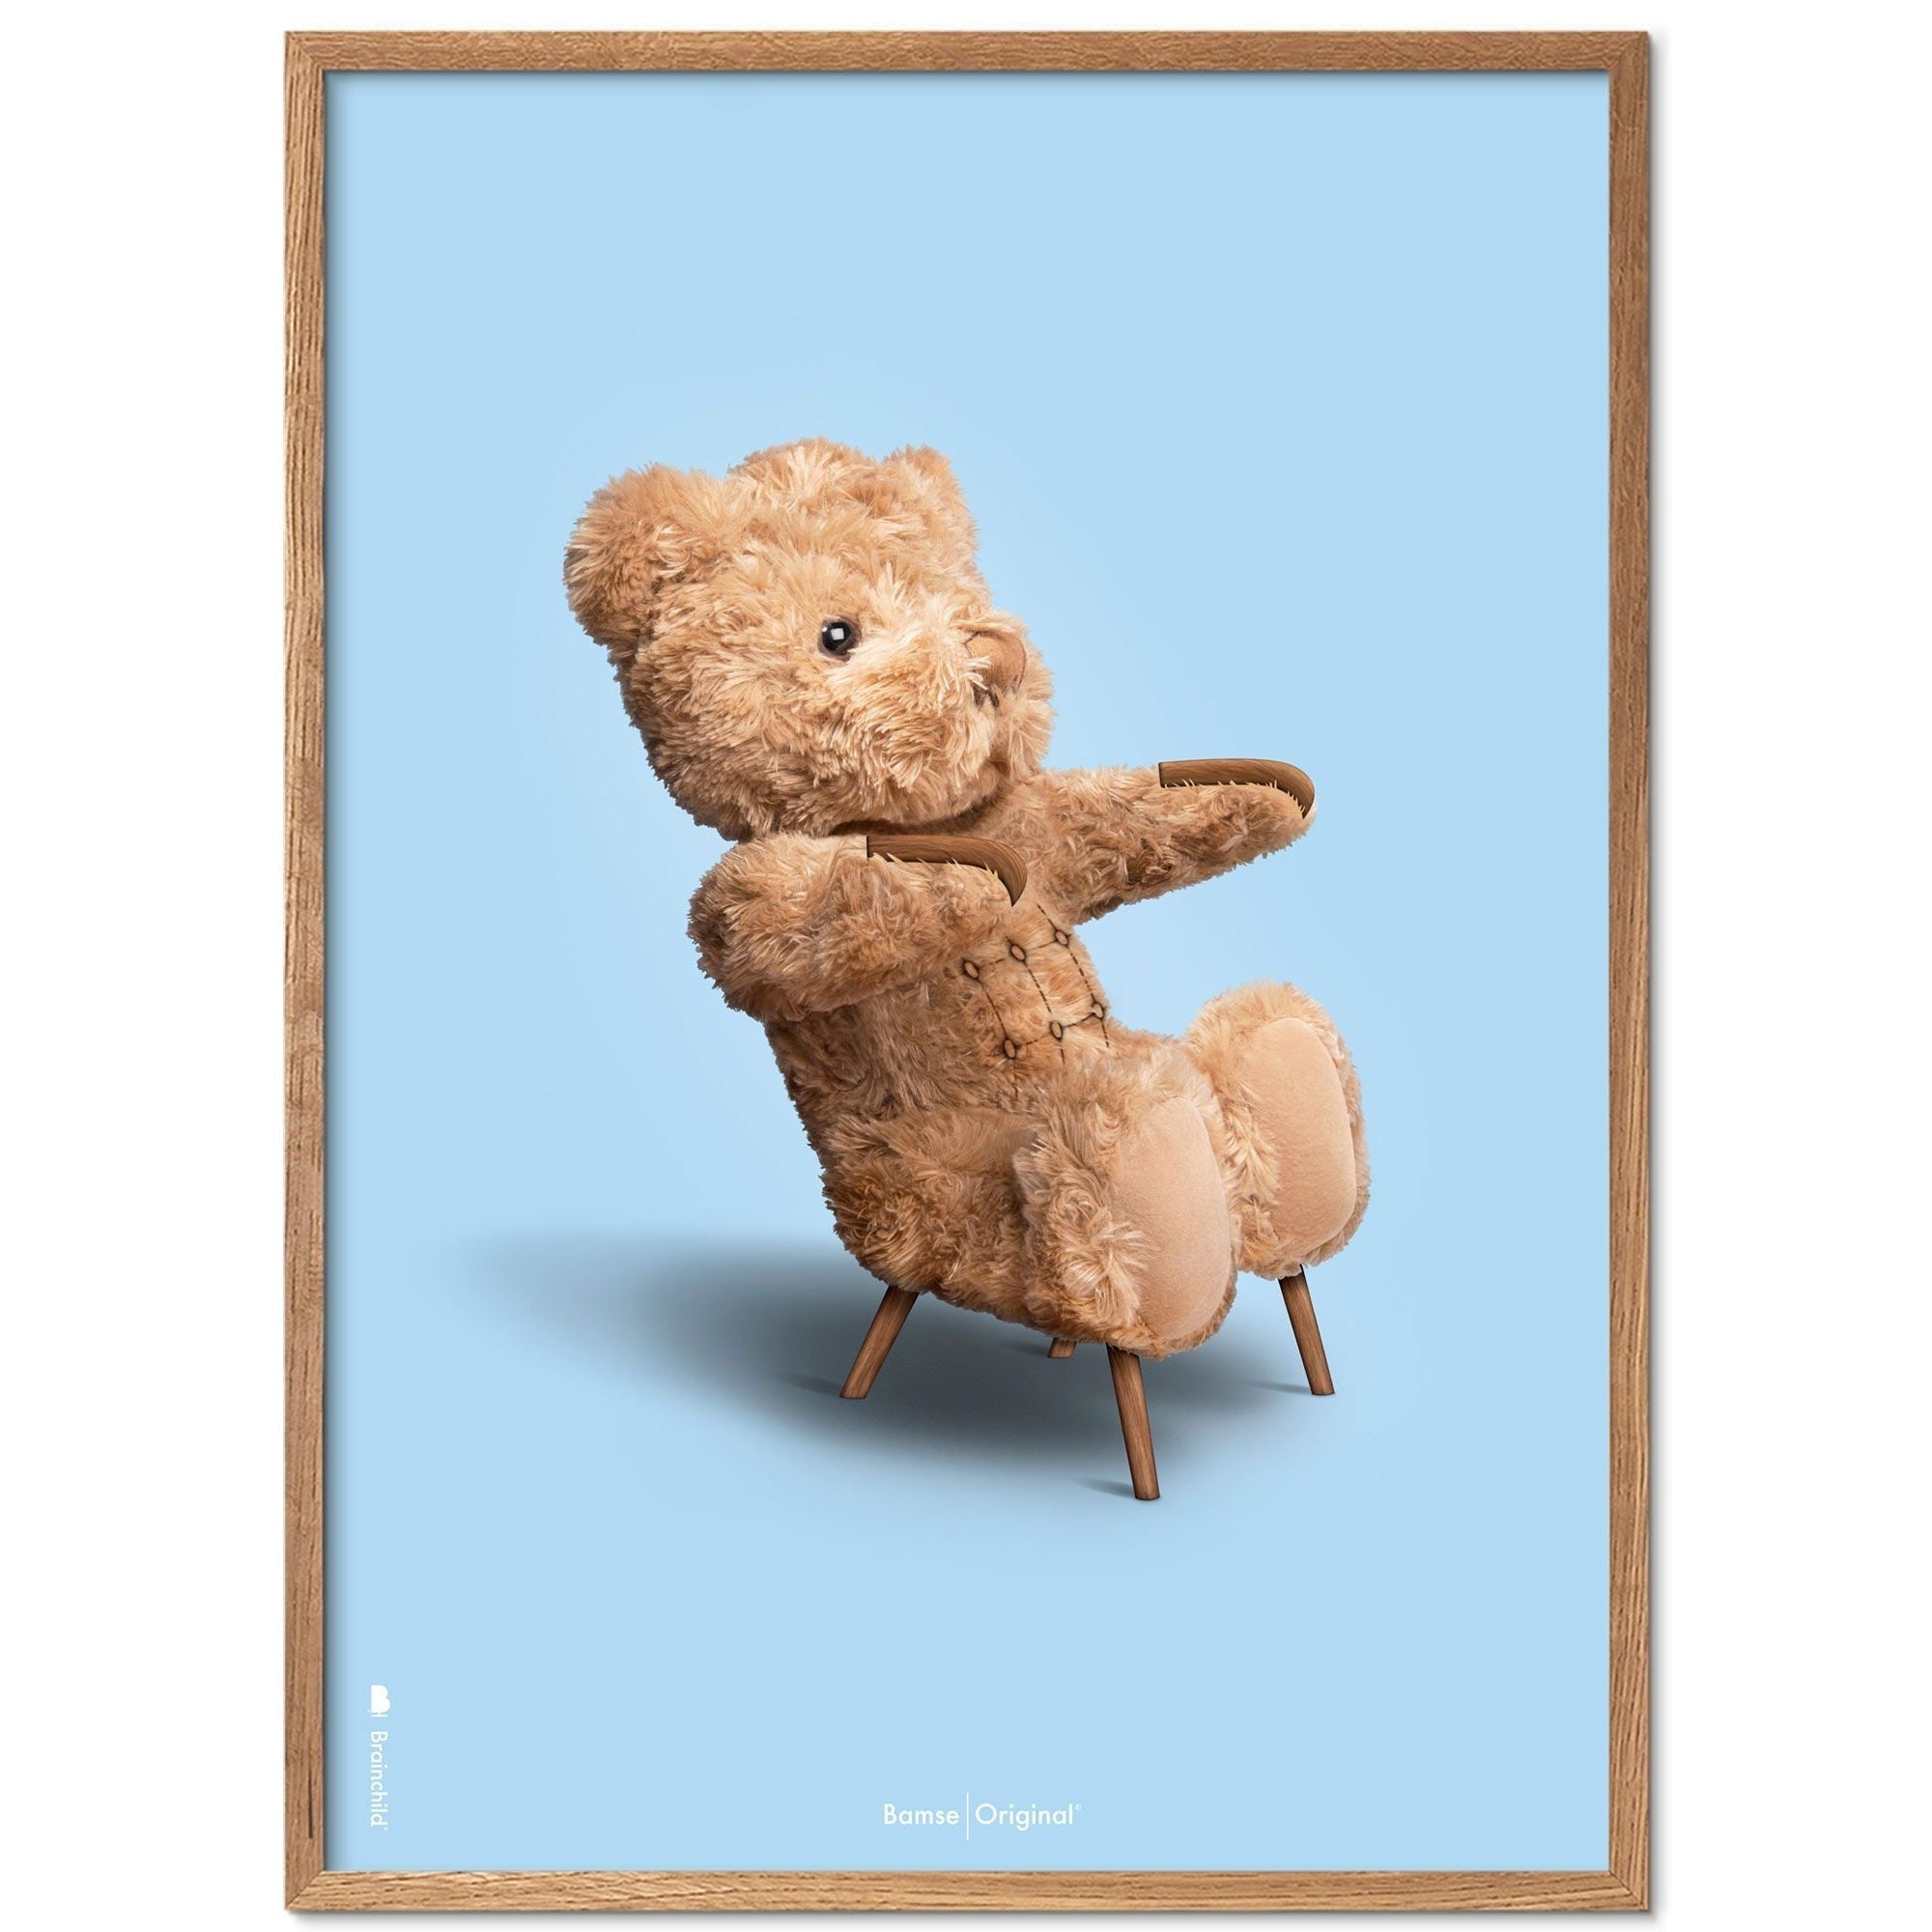 Brainchild Teddybär Classic Posterrahmen aus hellem Holz Ramme 30x40 Cm, hellblauer Hintergrund